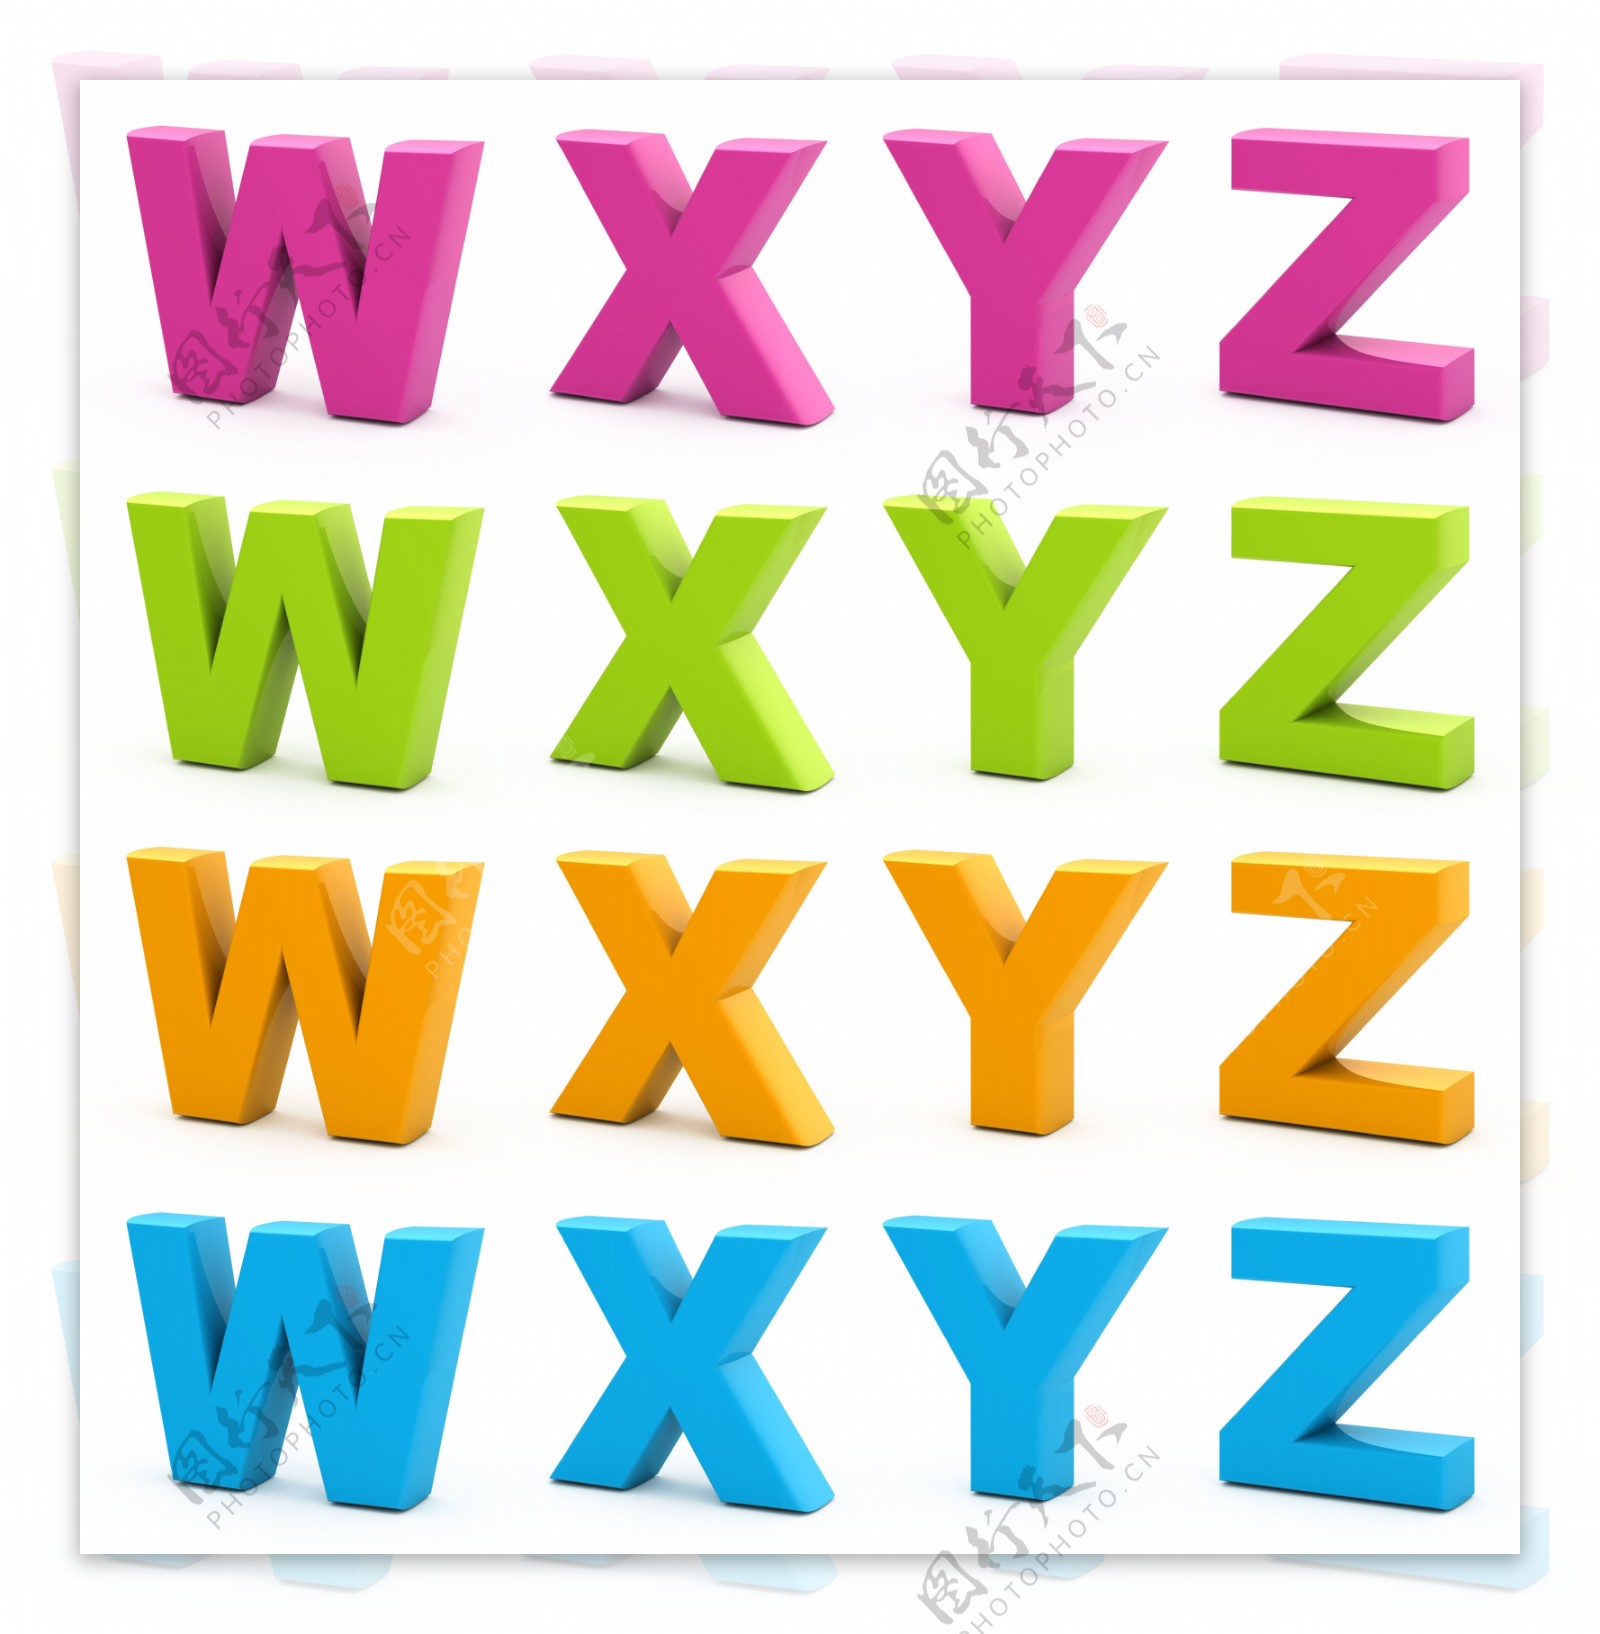 彩色立体WXYZ字母图片